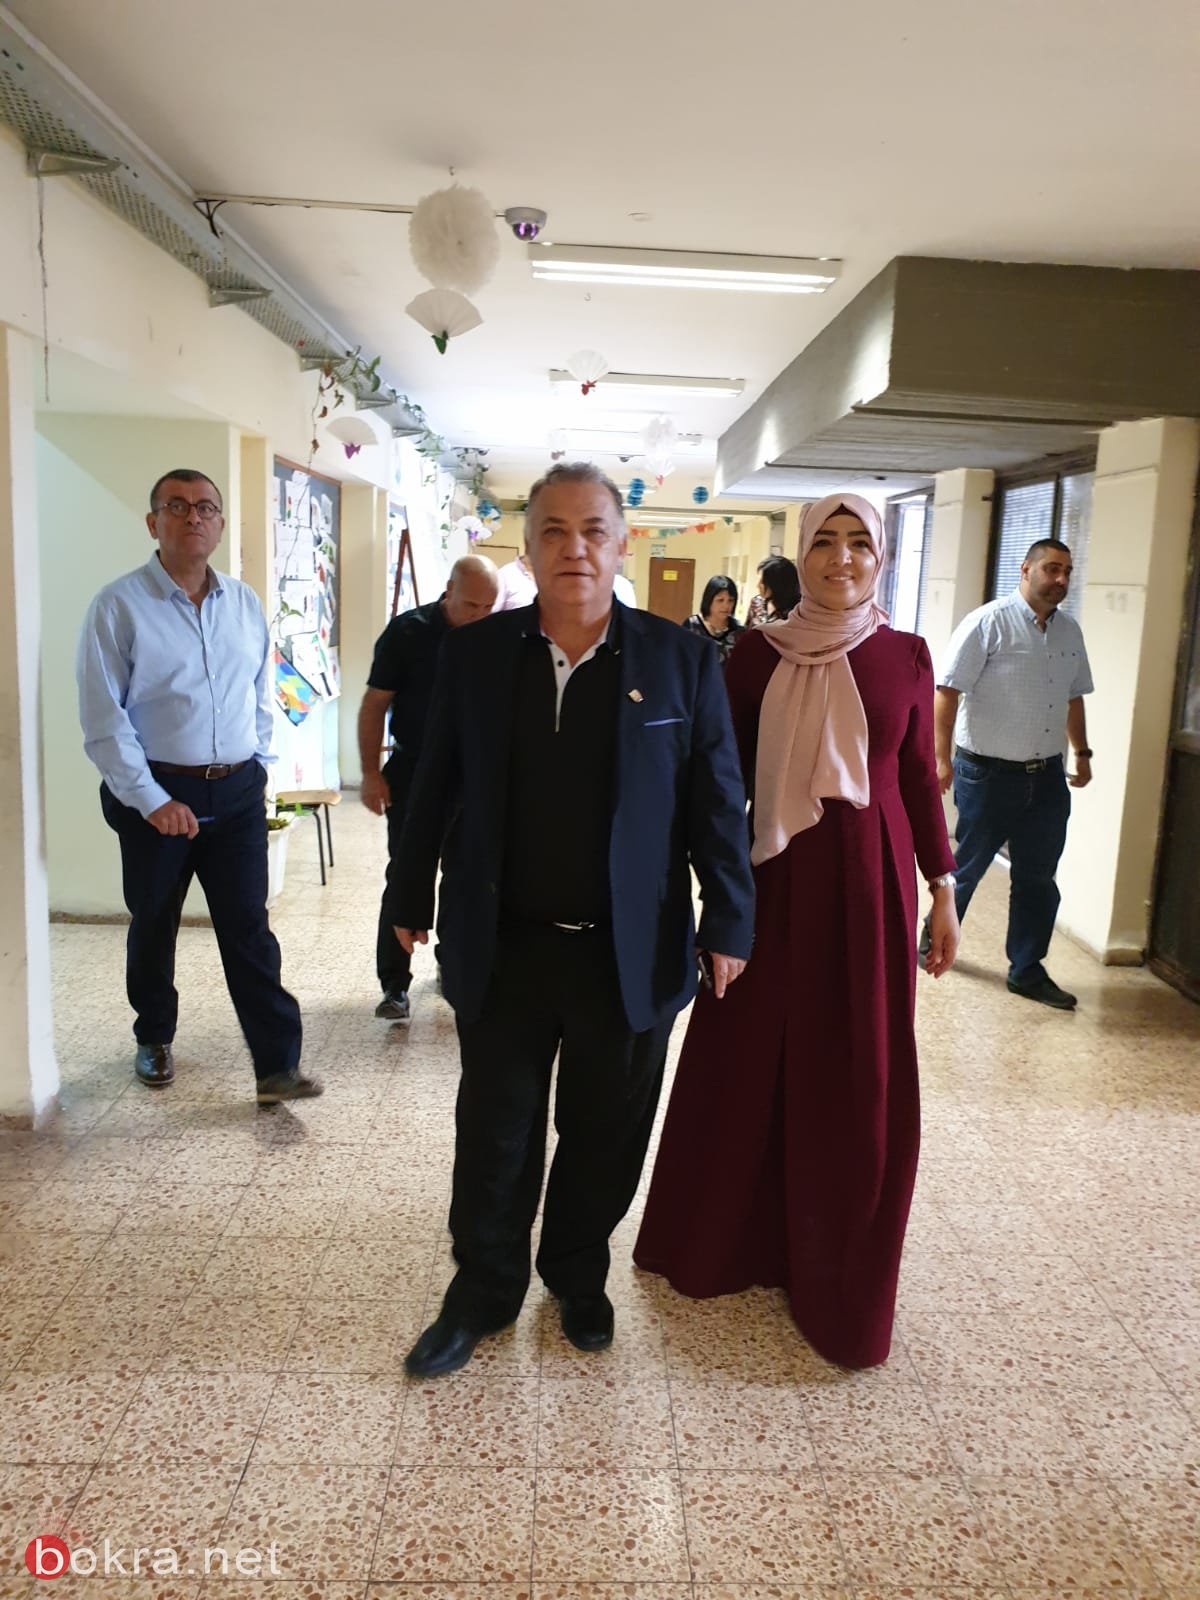 لليوم الثاني على التوالي رئيس بلدية الناصرة  وادارتها في جوله تفقدية-4